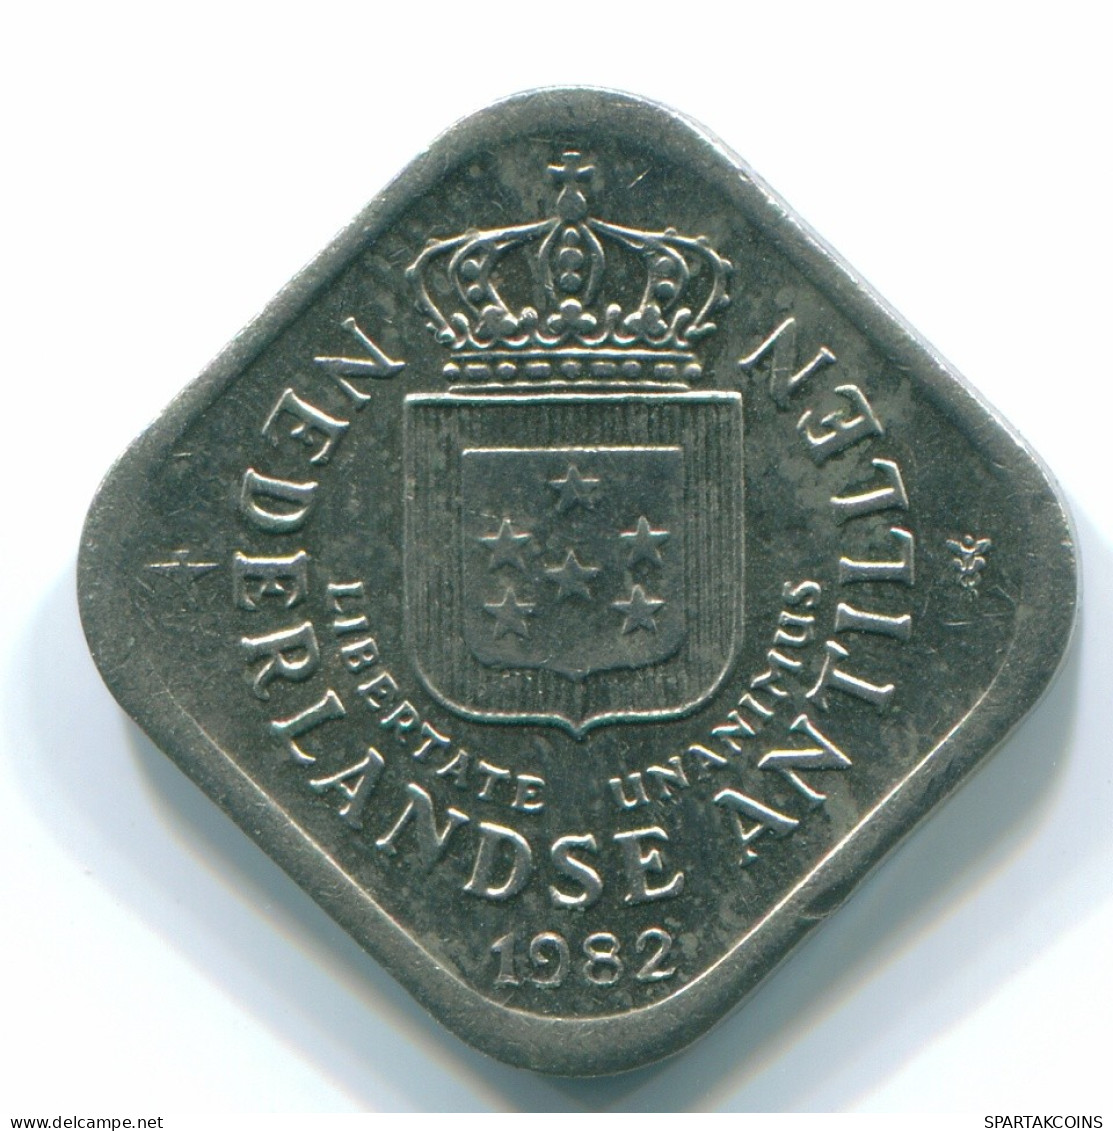 5 CENTS 1982 NIEDERLÄNDISCHE ANTILLEN Nickel Koloniale Münze #S12353.D.A - Antilles Néerlandaises